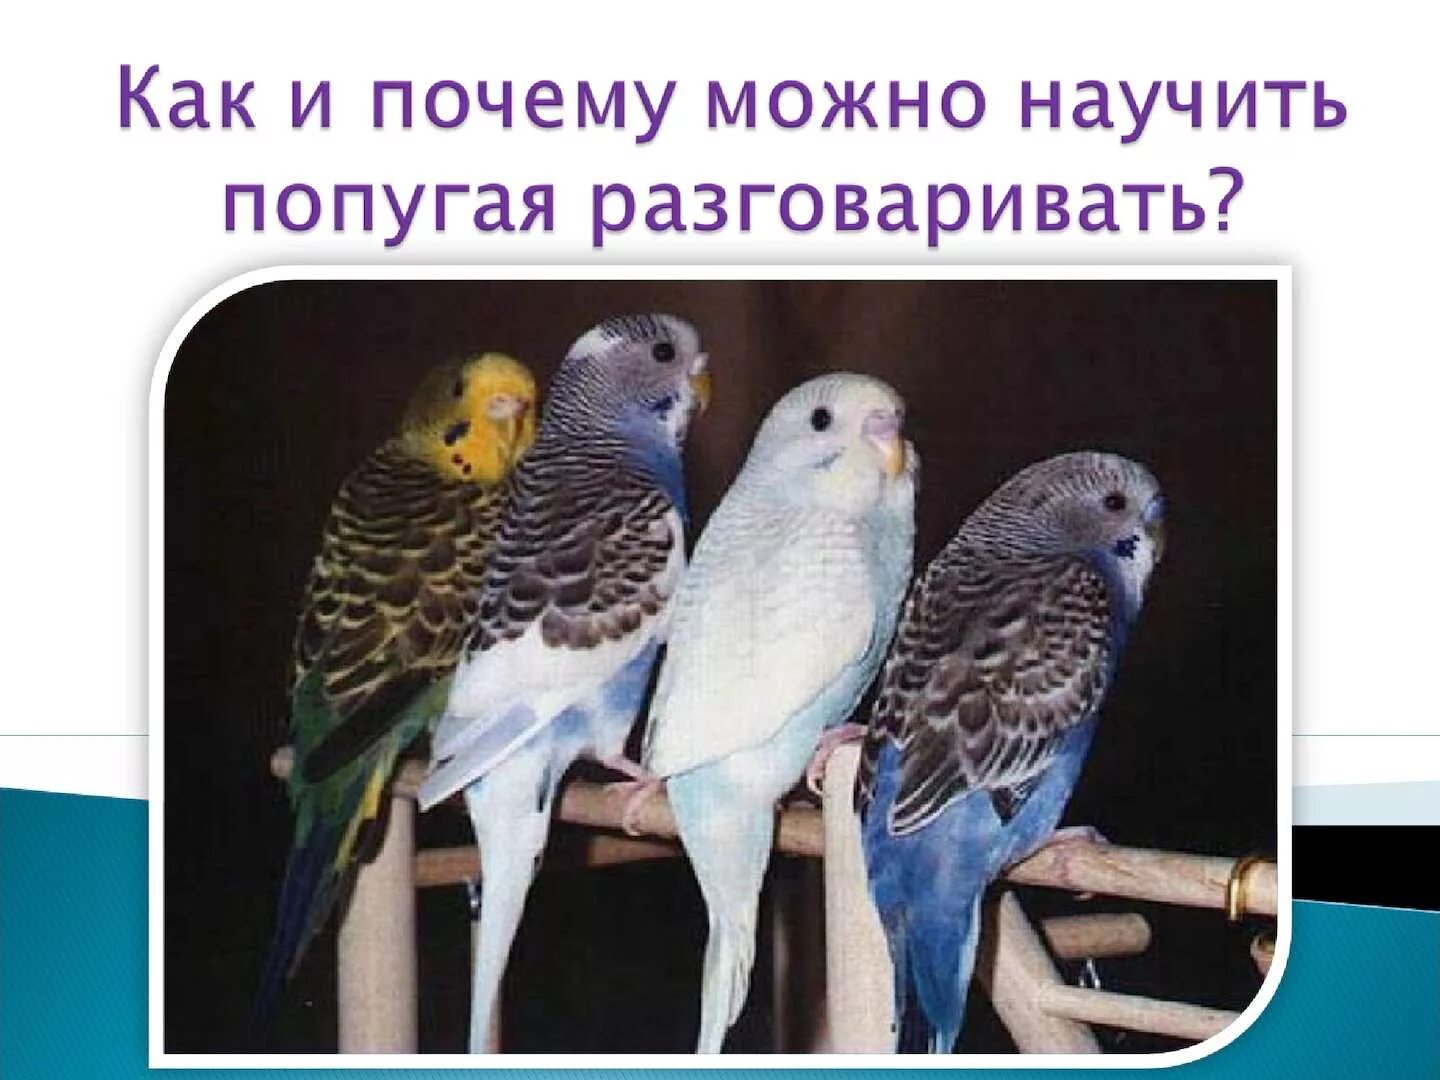 Почему попугаи разговаривают. Исследовательская работа почему попугаи могут разговаривать. Попугай который умеет разговаривать. Каких попугаев можно научить говорить. Учимся говорить попугая